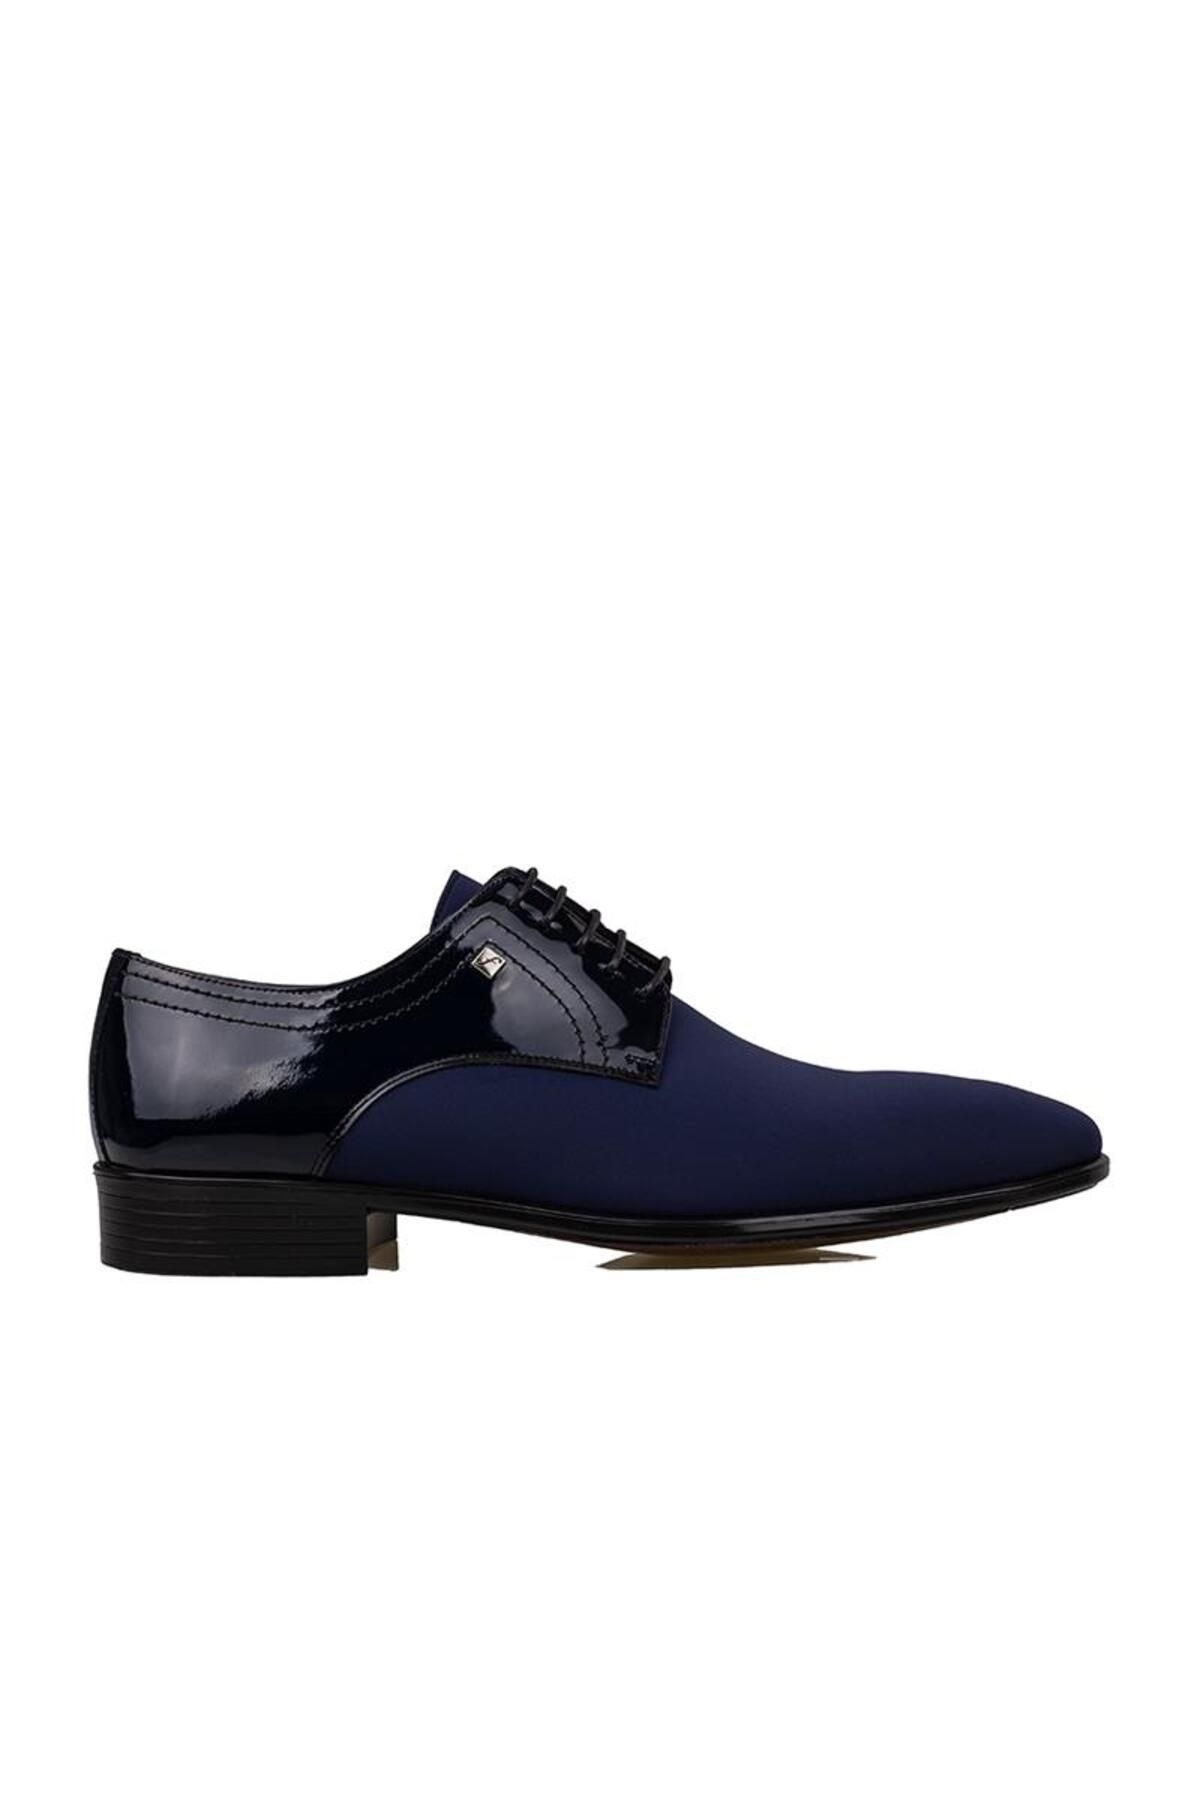 Fosco Mavi Saten Özel Üretim Erkek Klasik Ayakkabı